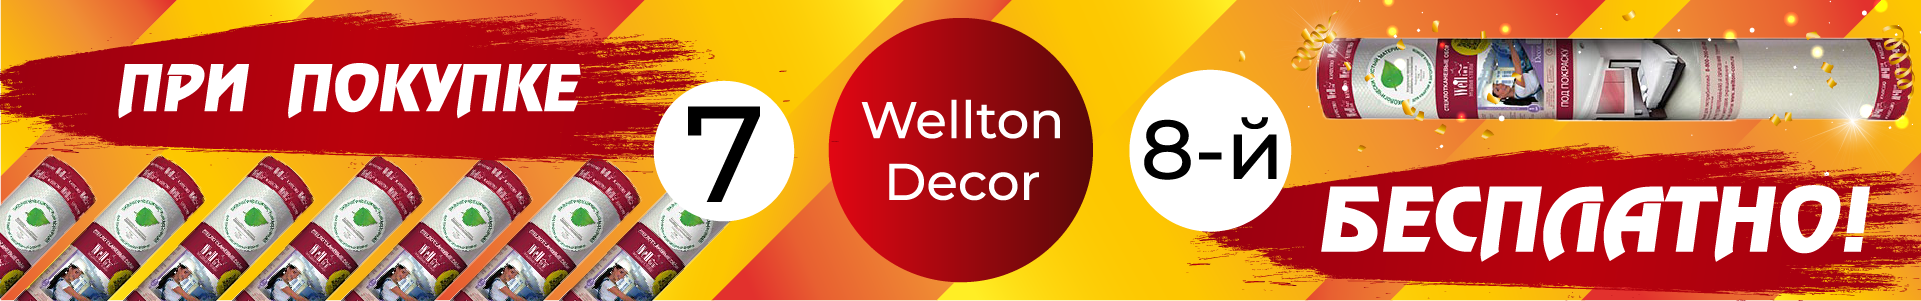 Акция на Wellton Decor